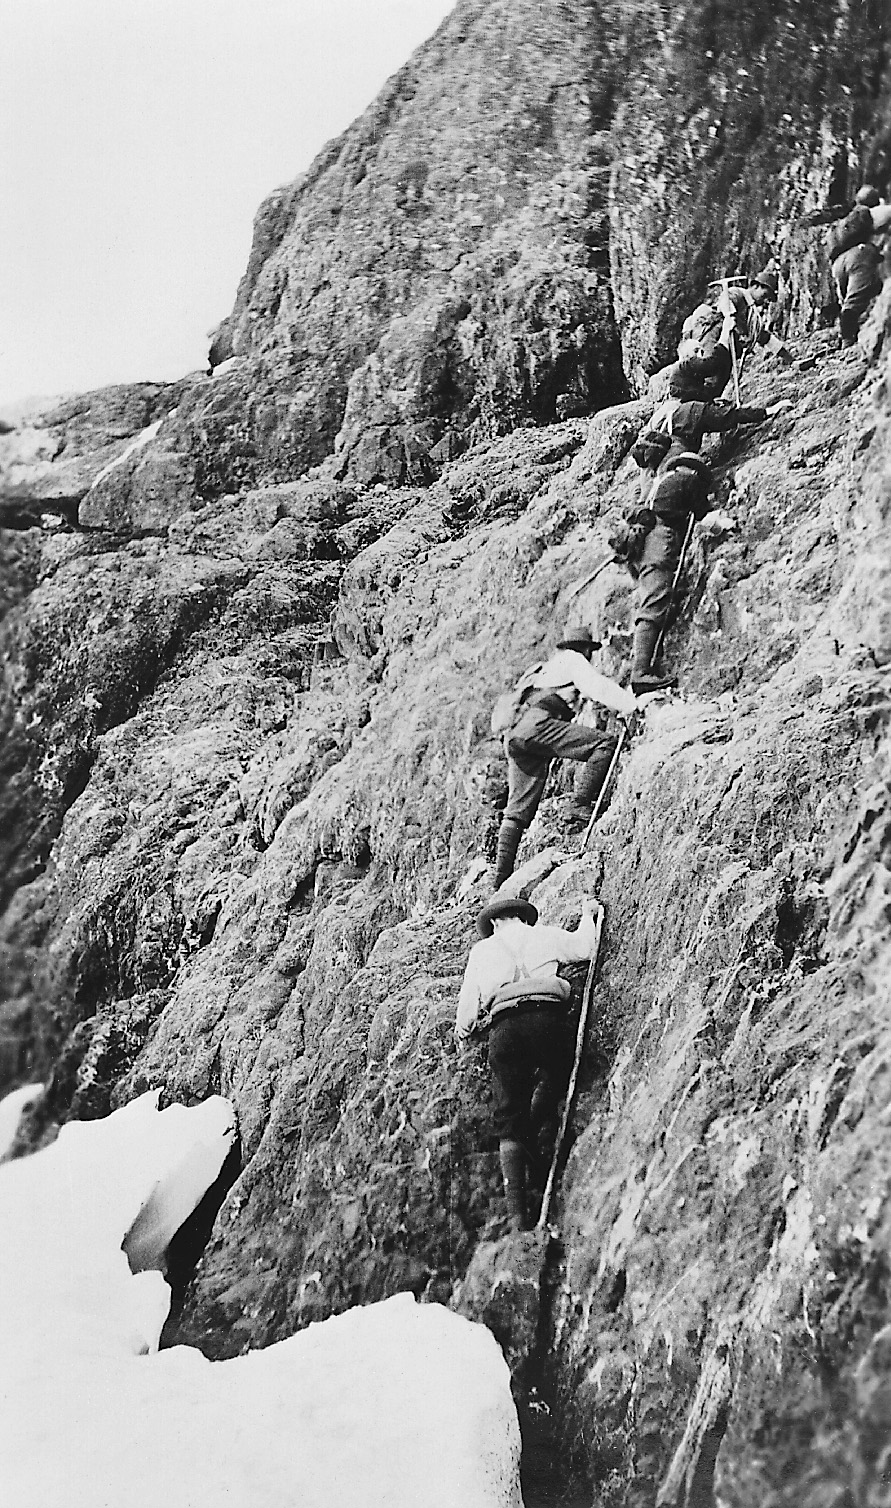 Climbers ascending Elkhorn Mountain 1912. Herbert Frind photo